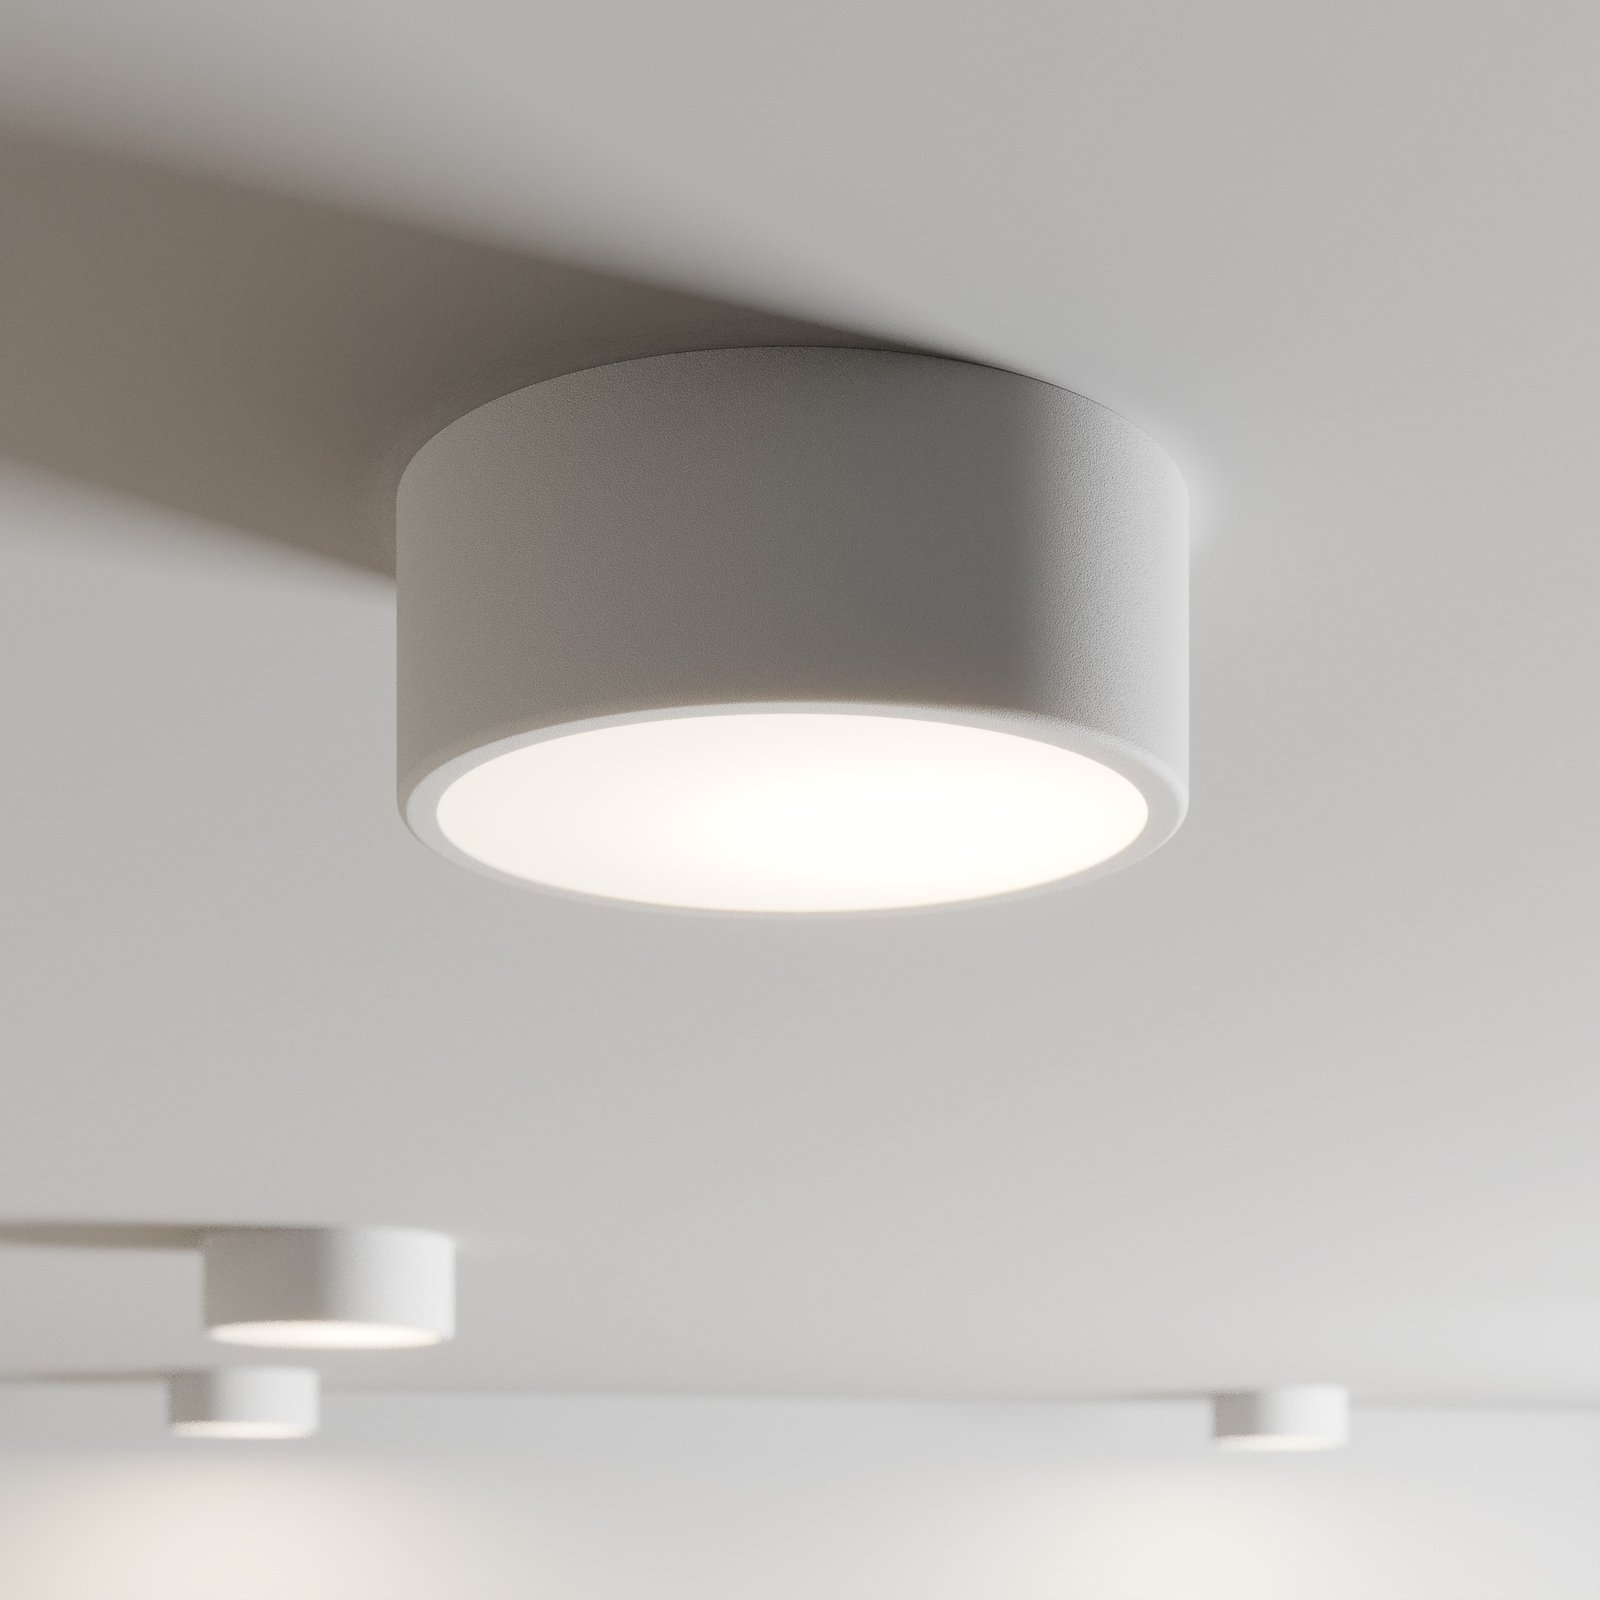 Cleo ceiling light, Ø 20 cm, white